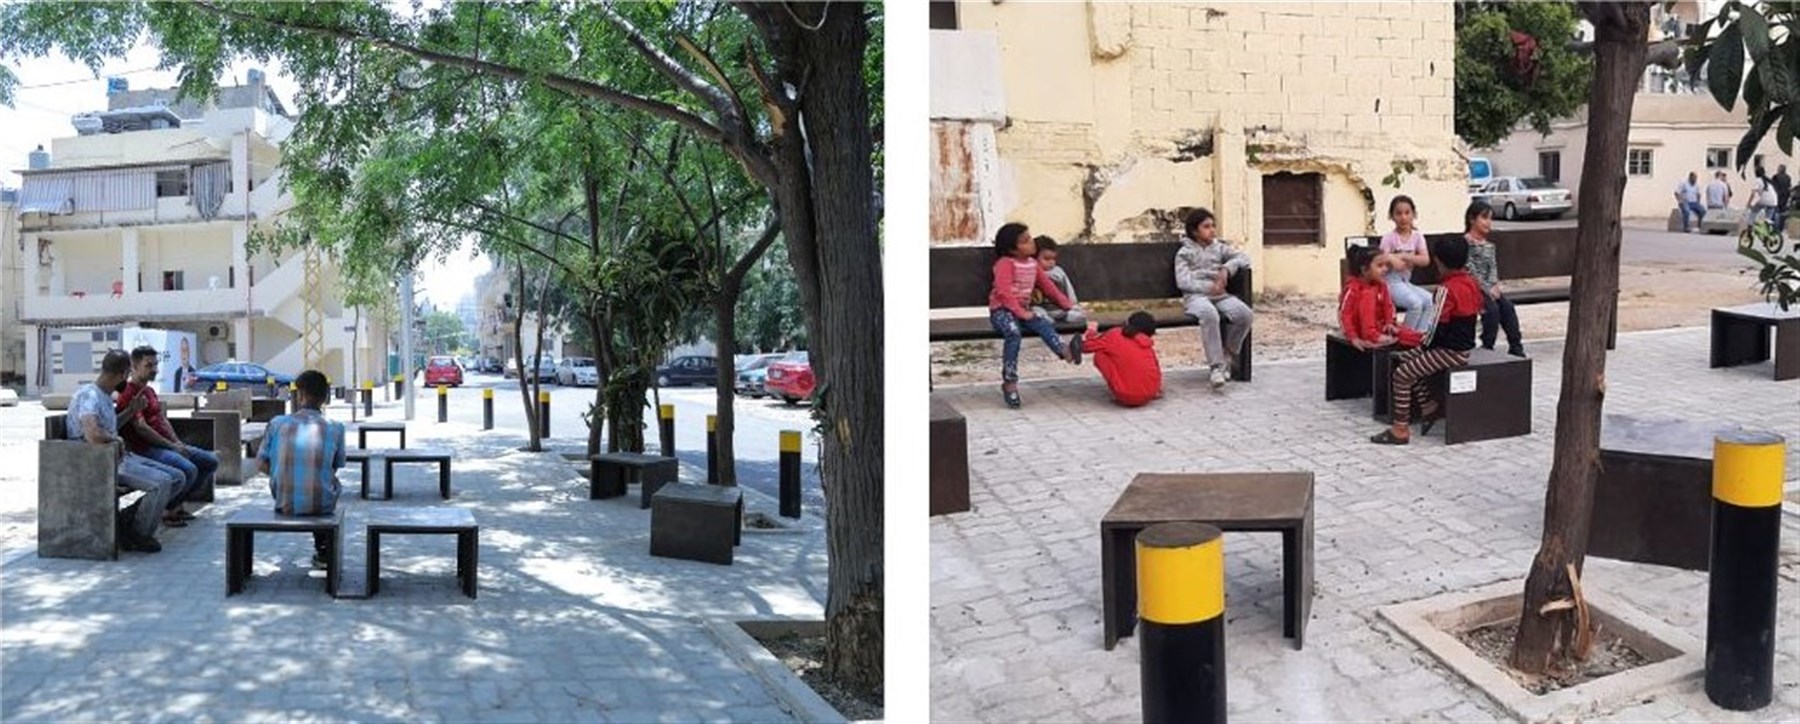 صور للمساحة العامة بعد اكتمال المشروع التصميمي وتُظهر استخدامات الأهلي المختلفة لها (الصور: على اليسار، بوستراي، 2022؛ على اليمين، حسن الأسود، 2022)